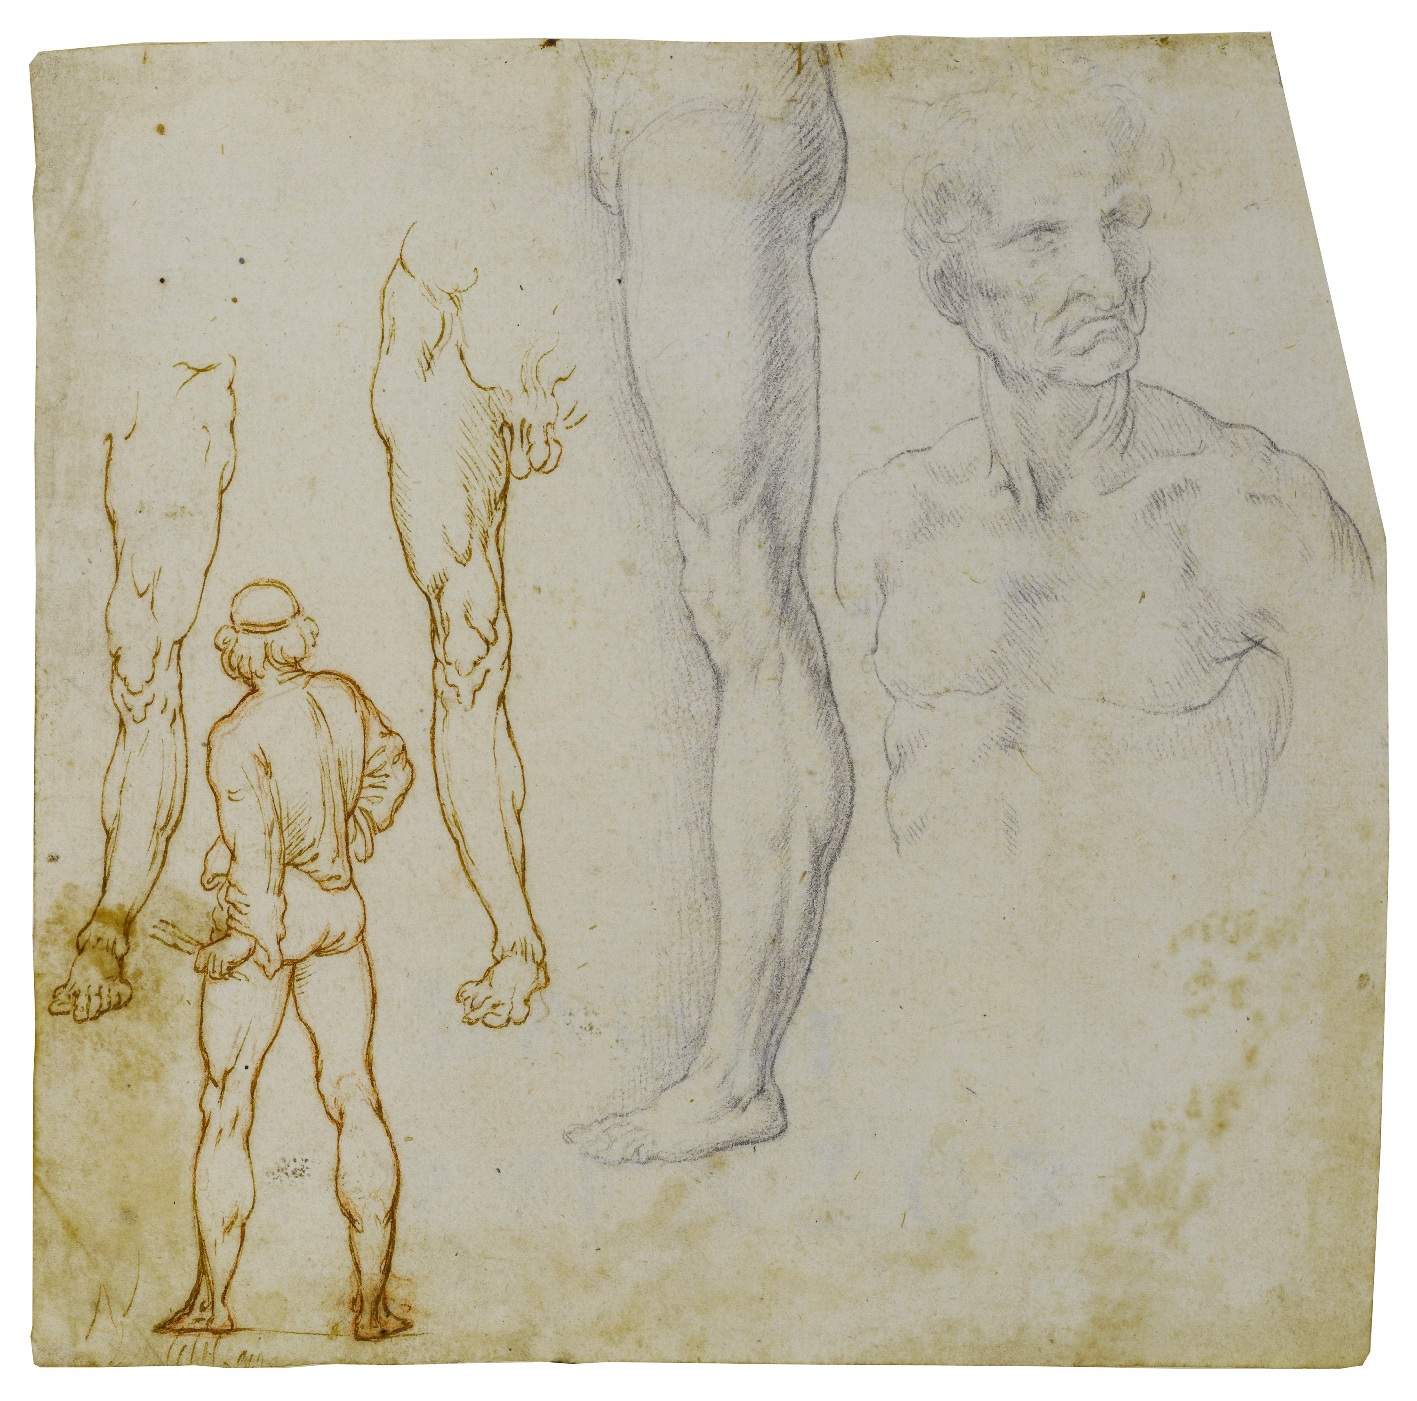 Une exposition sur les études anatomiques de Léonard de Vinci